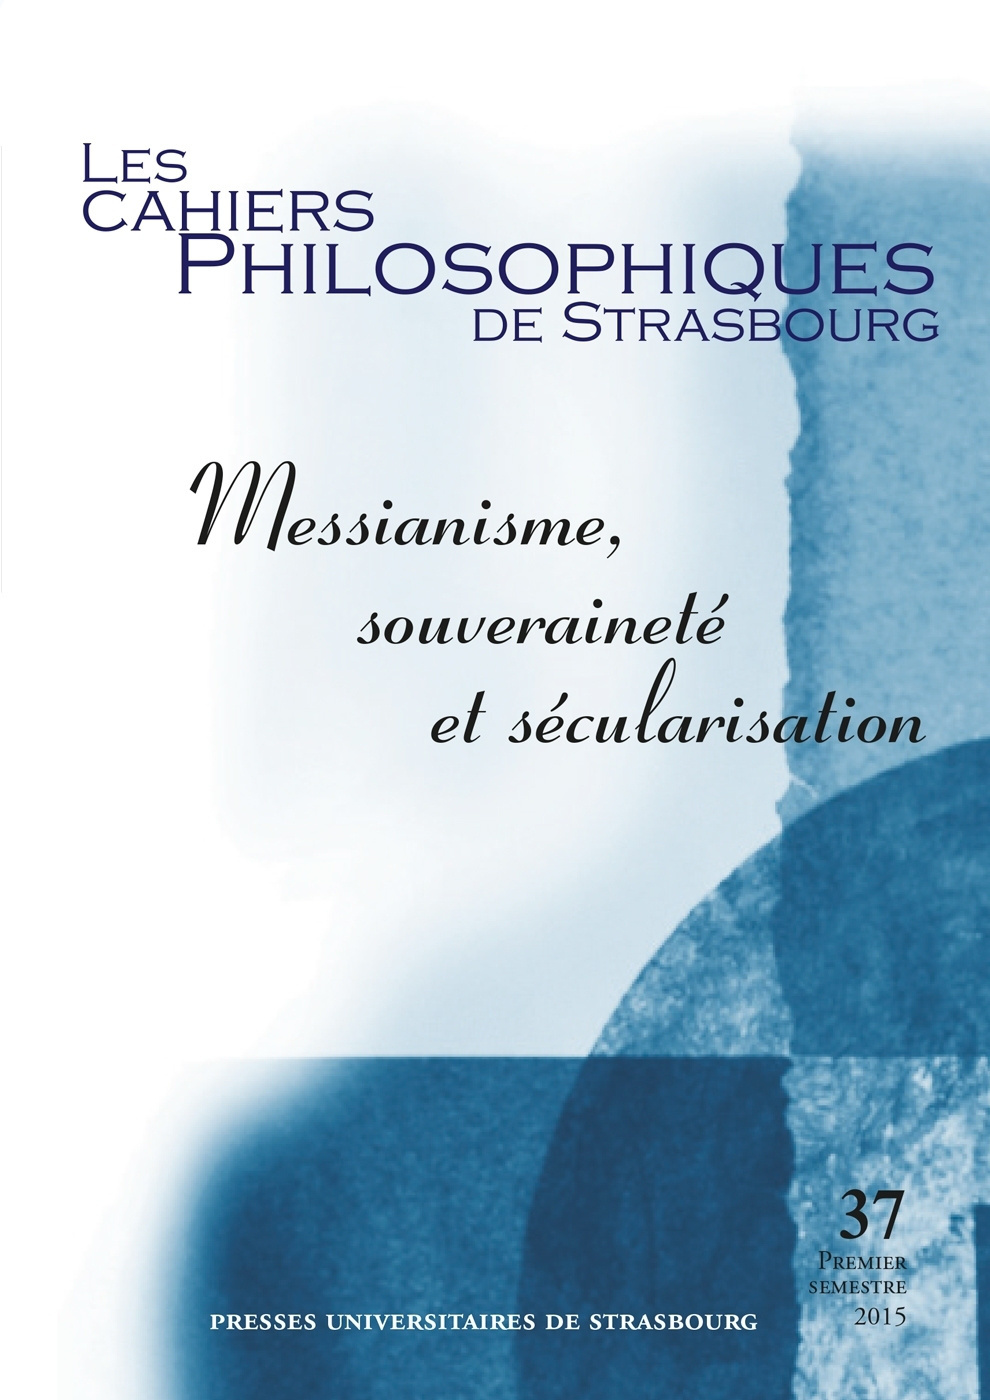 Les Cahiers philosophiques de Strasbourg n°37/2015